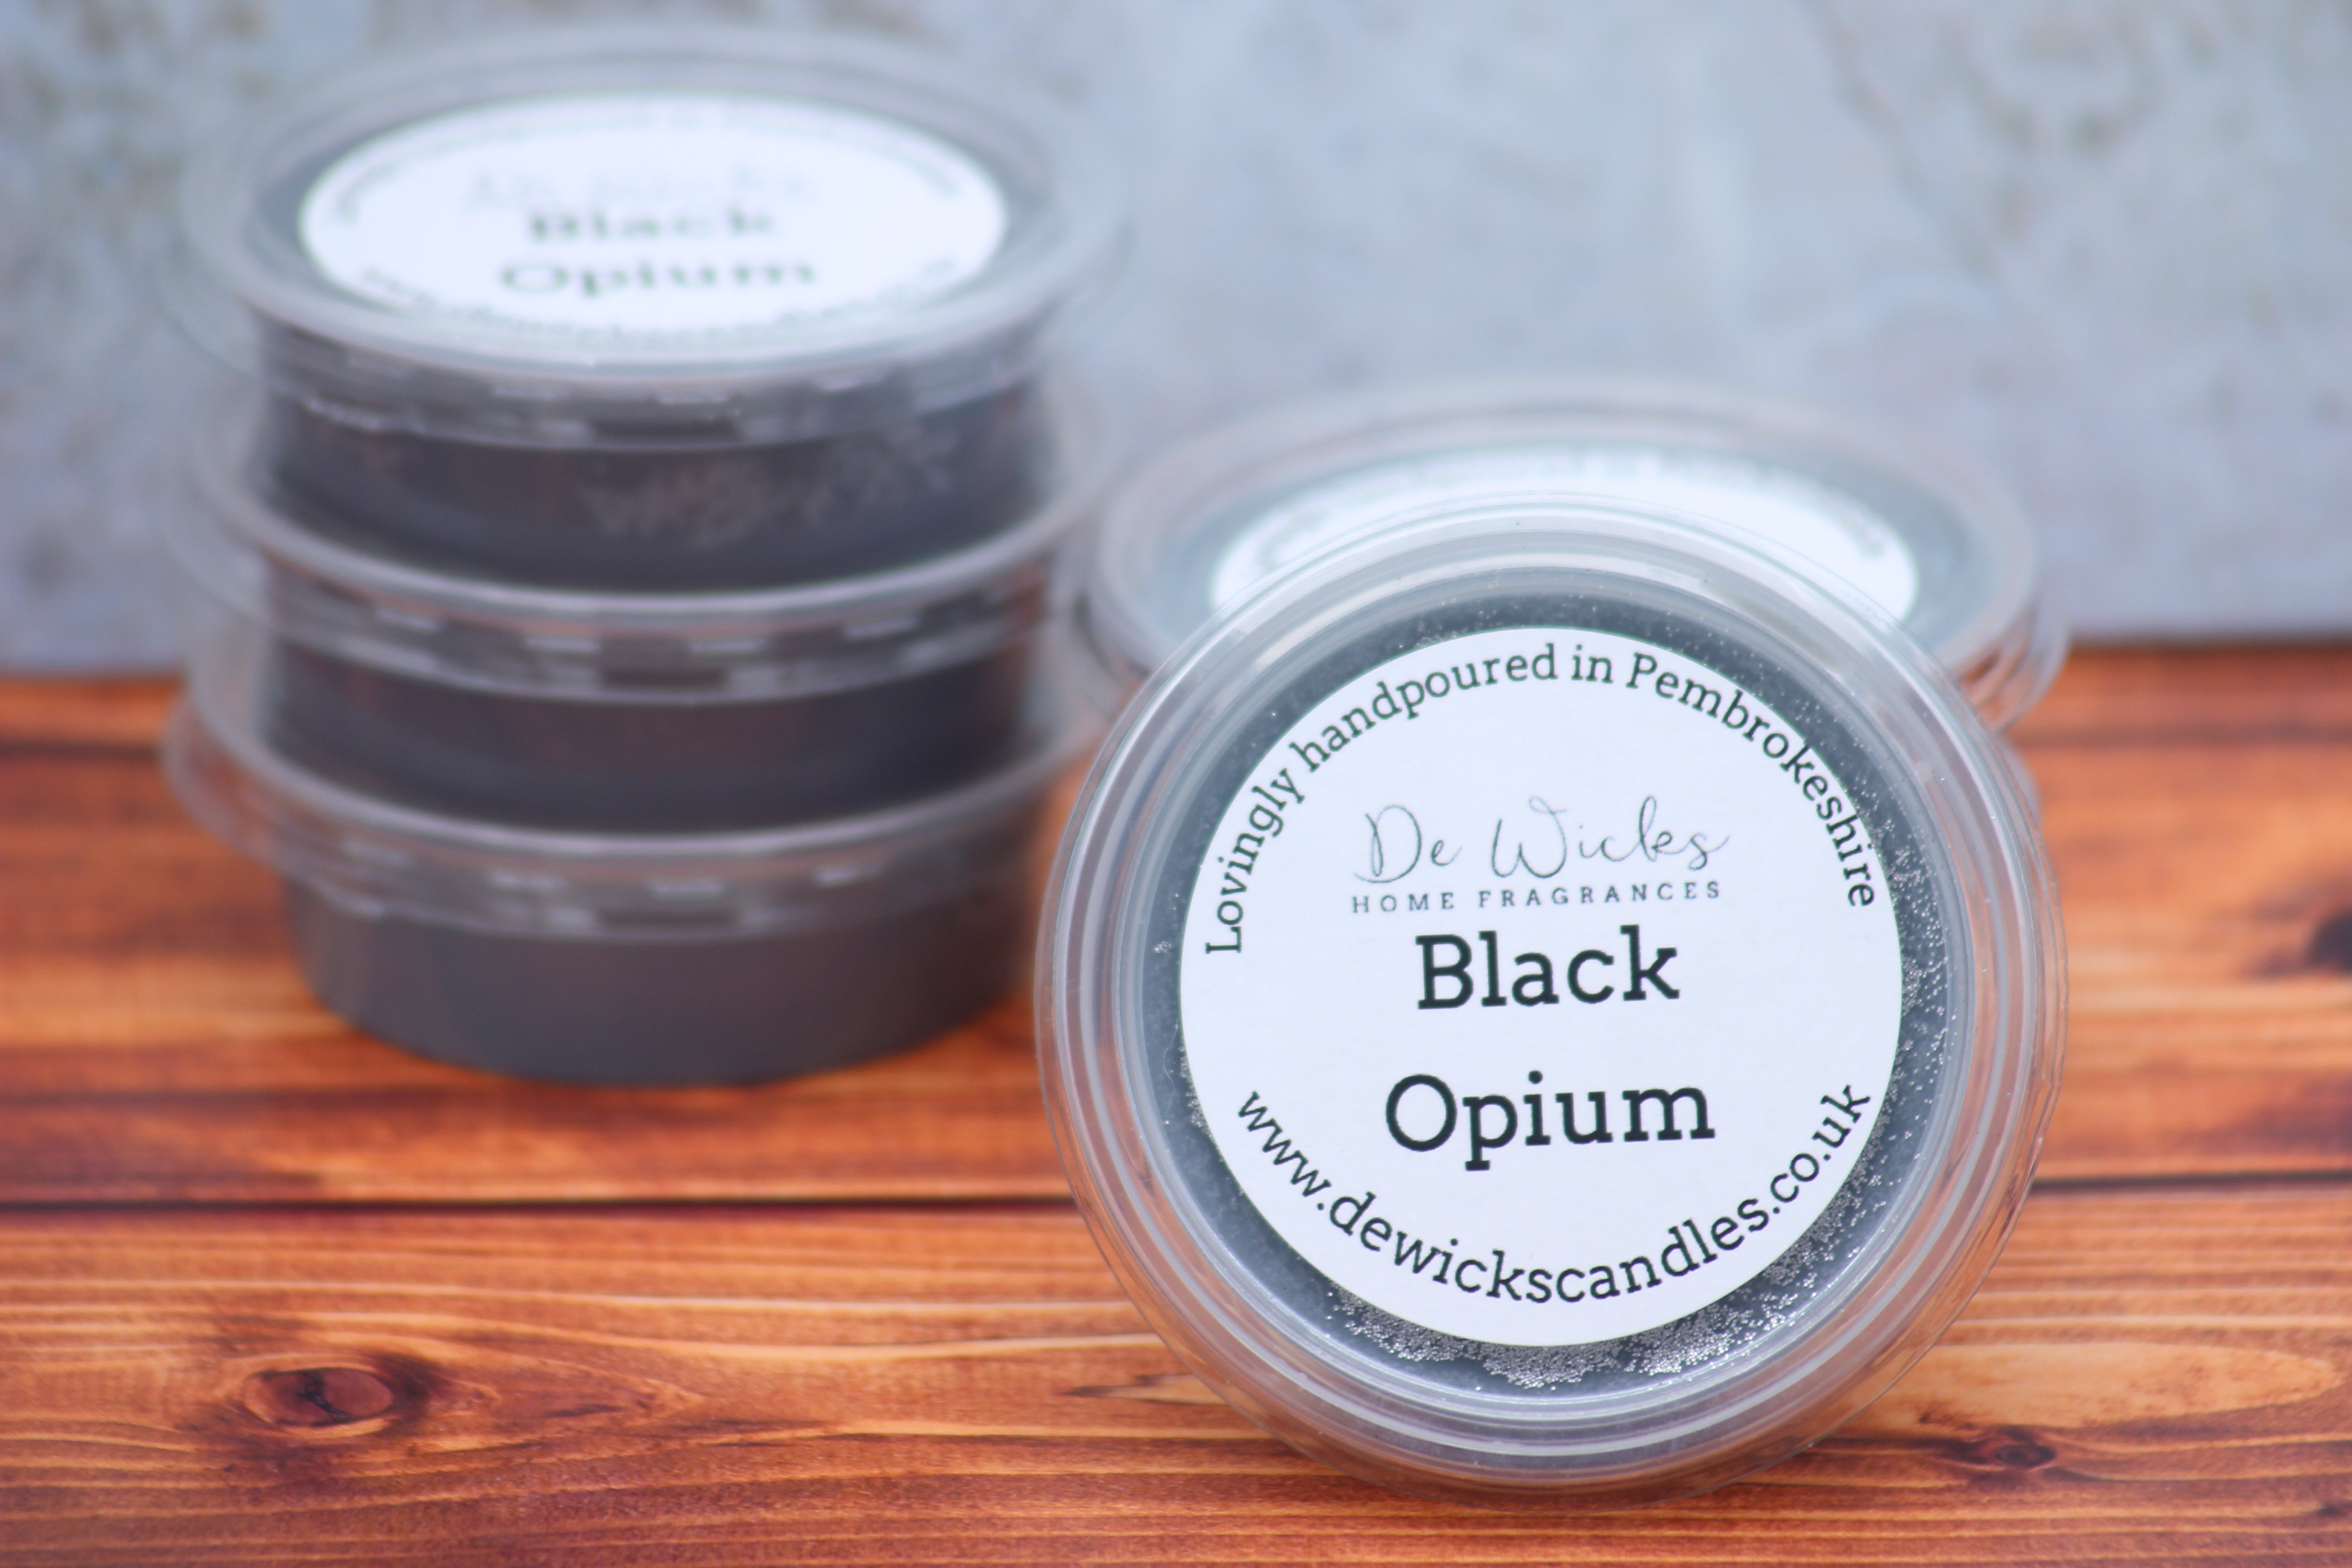 Black Opium - De Wicks Home Fragrances